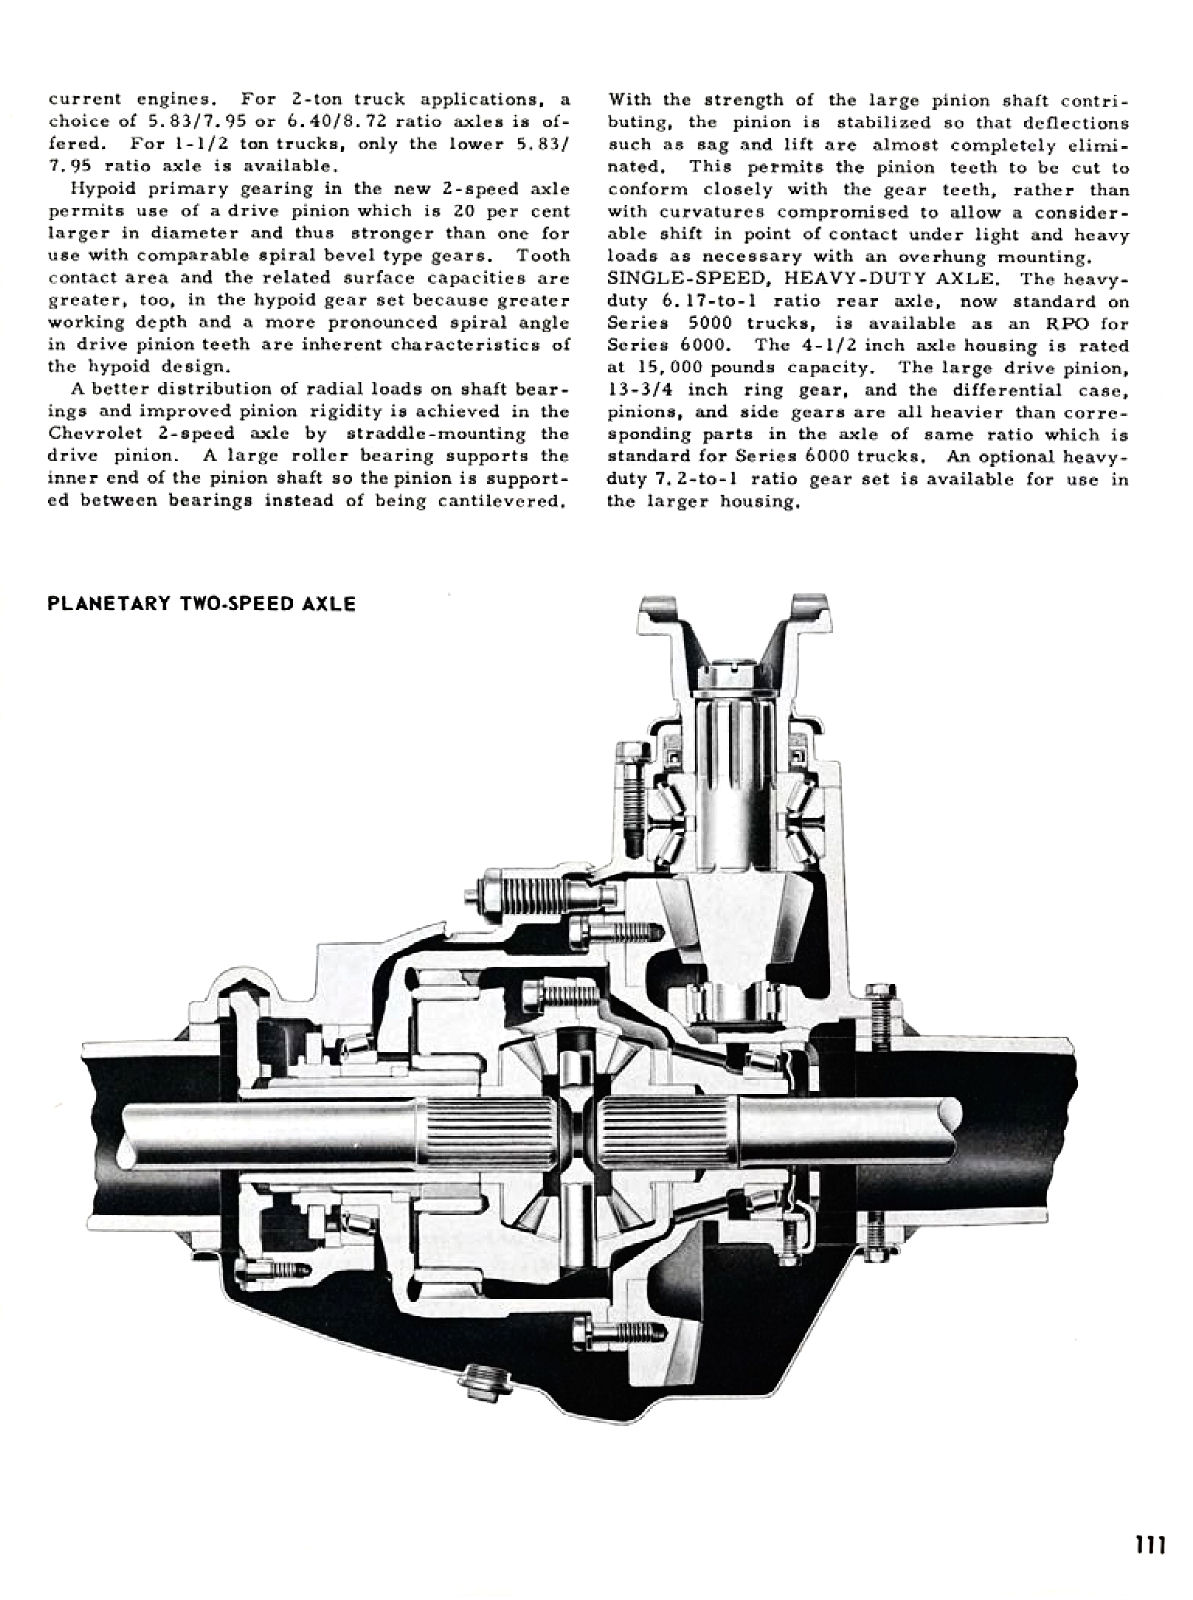 1955_Chevrolet_Truck_Engineering_Features-111